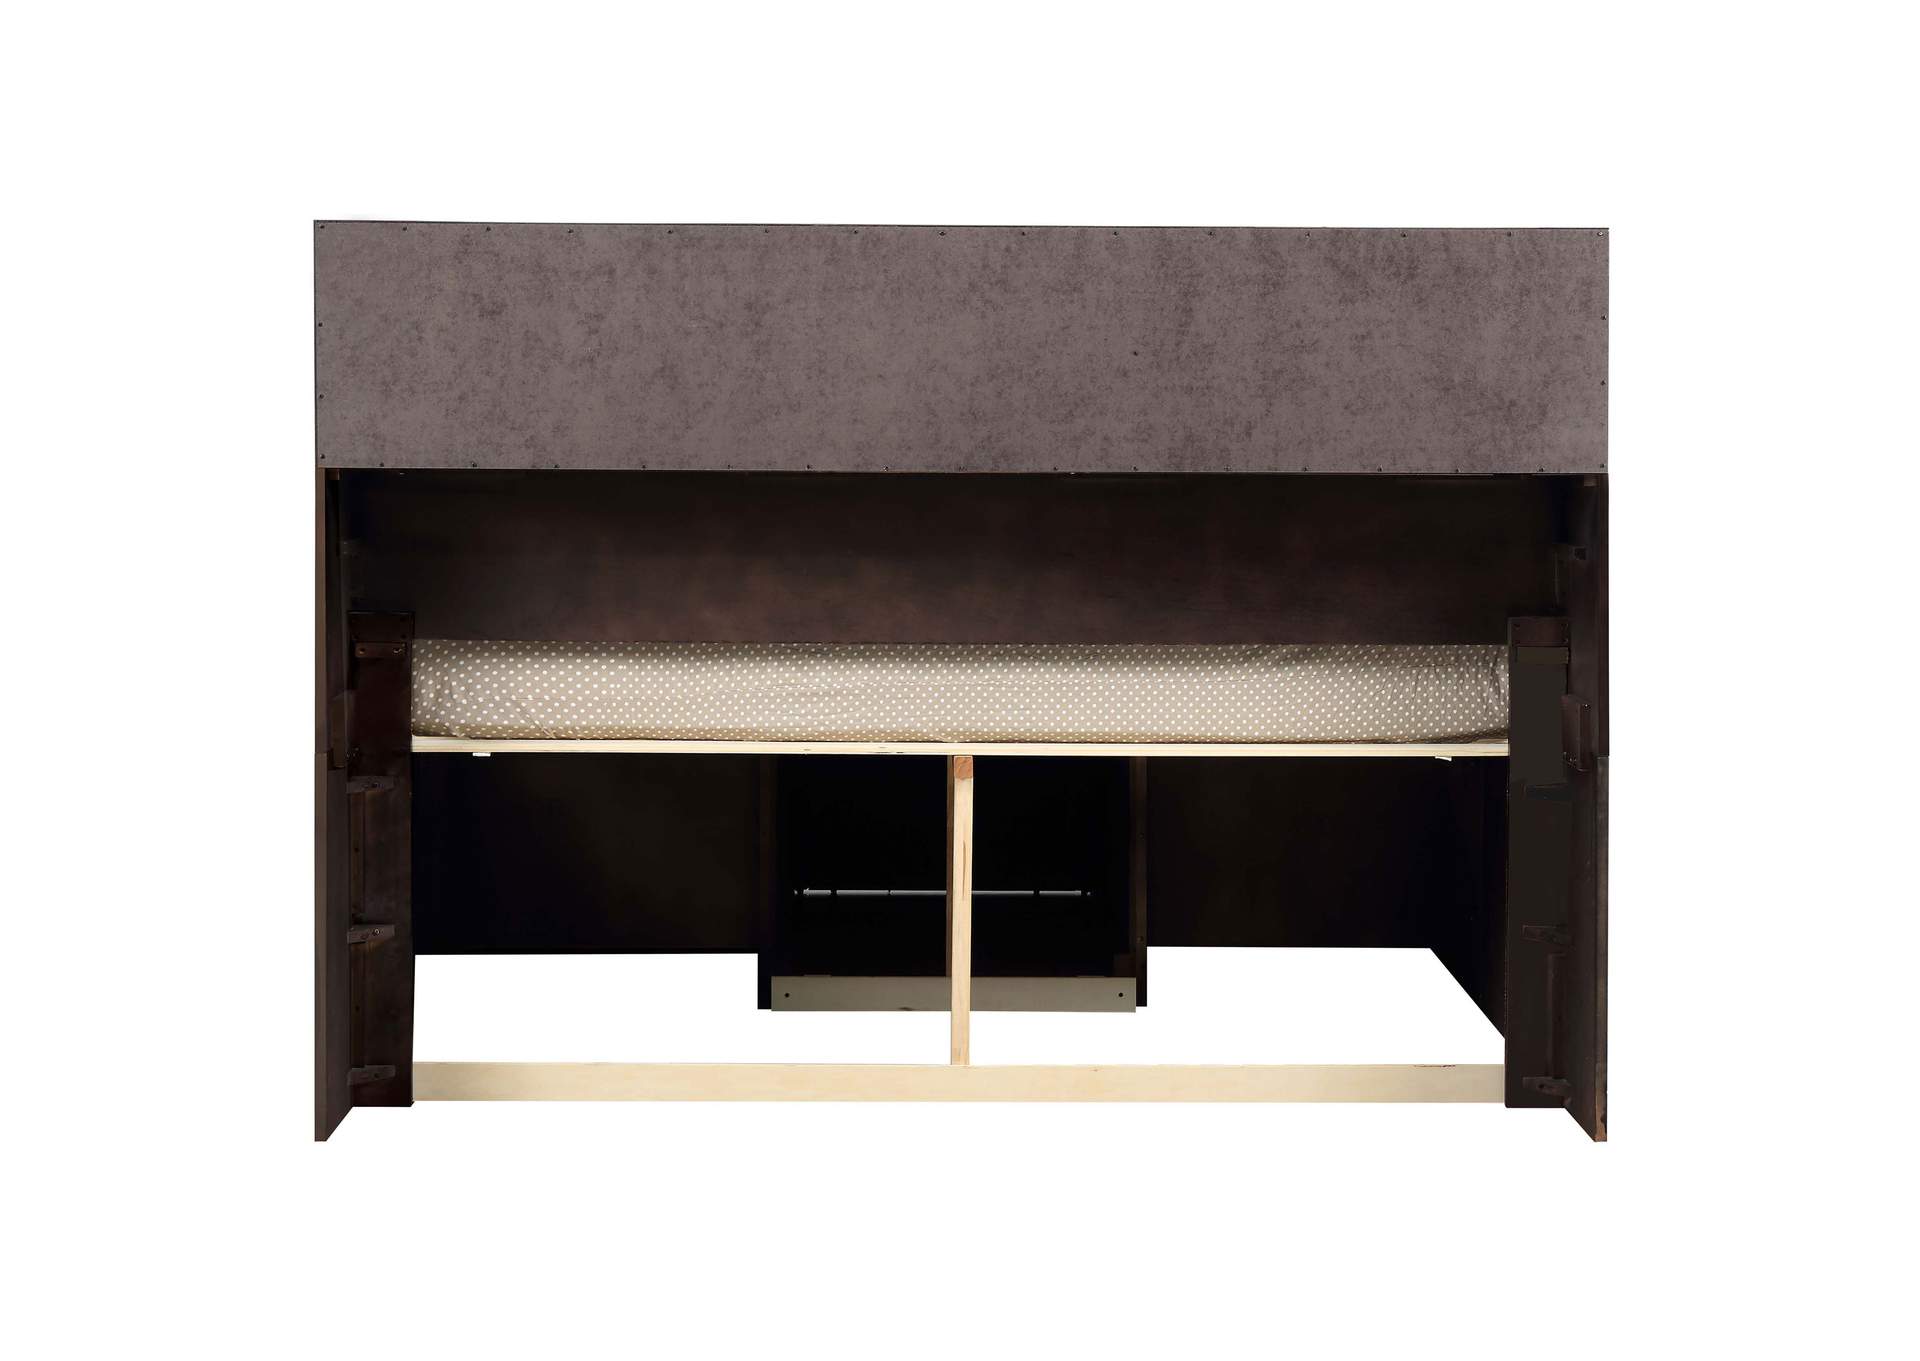 Phoenix 10-drawer Queen Bed Deep Cappuccino,Coaster Furniture